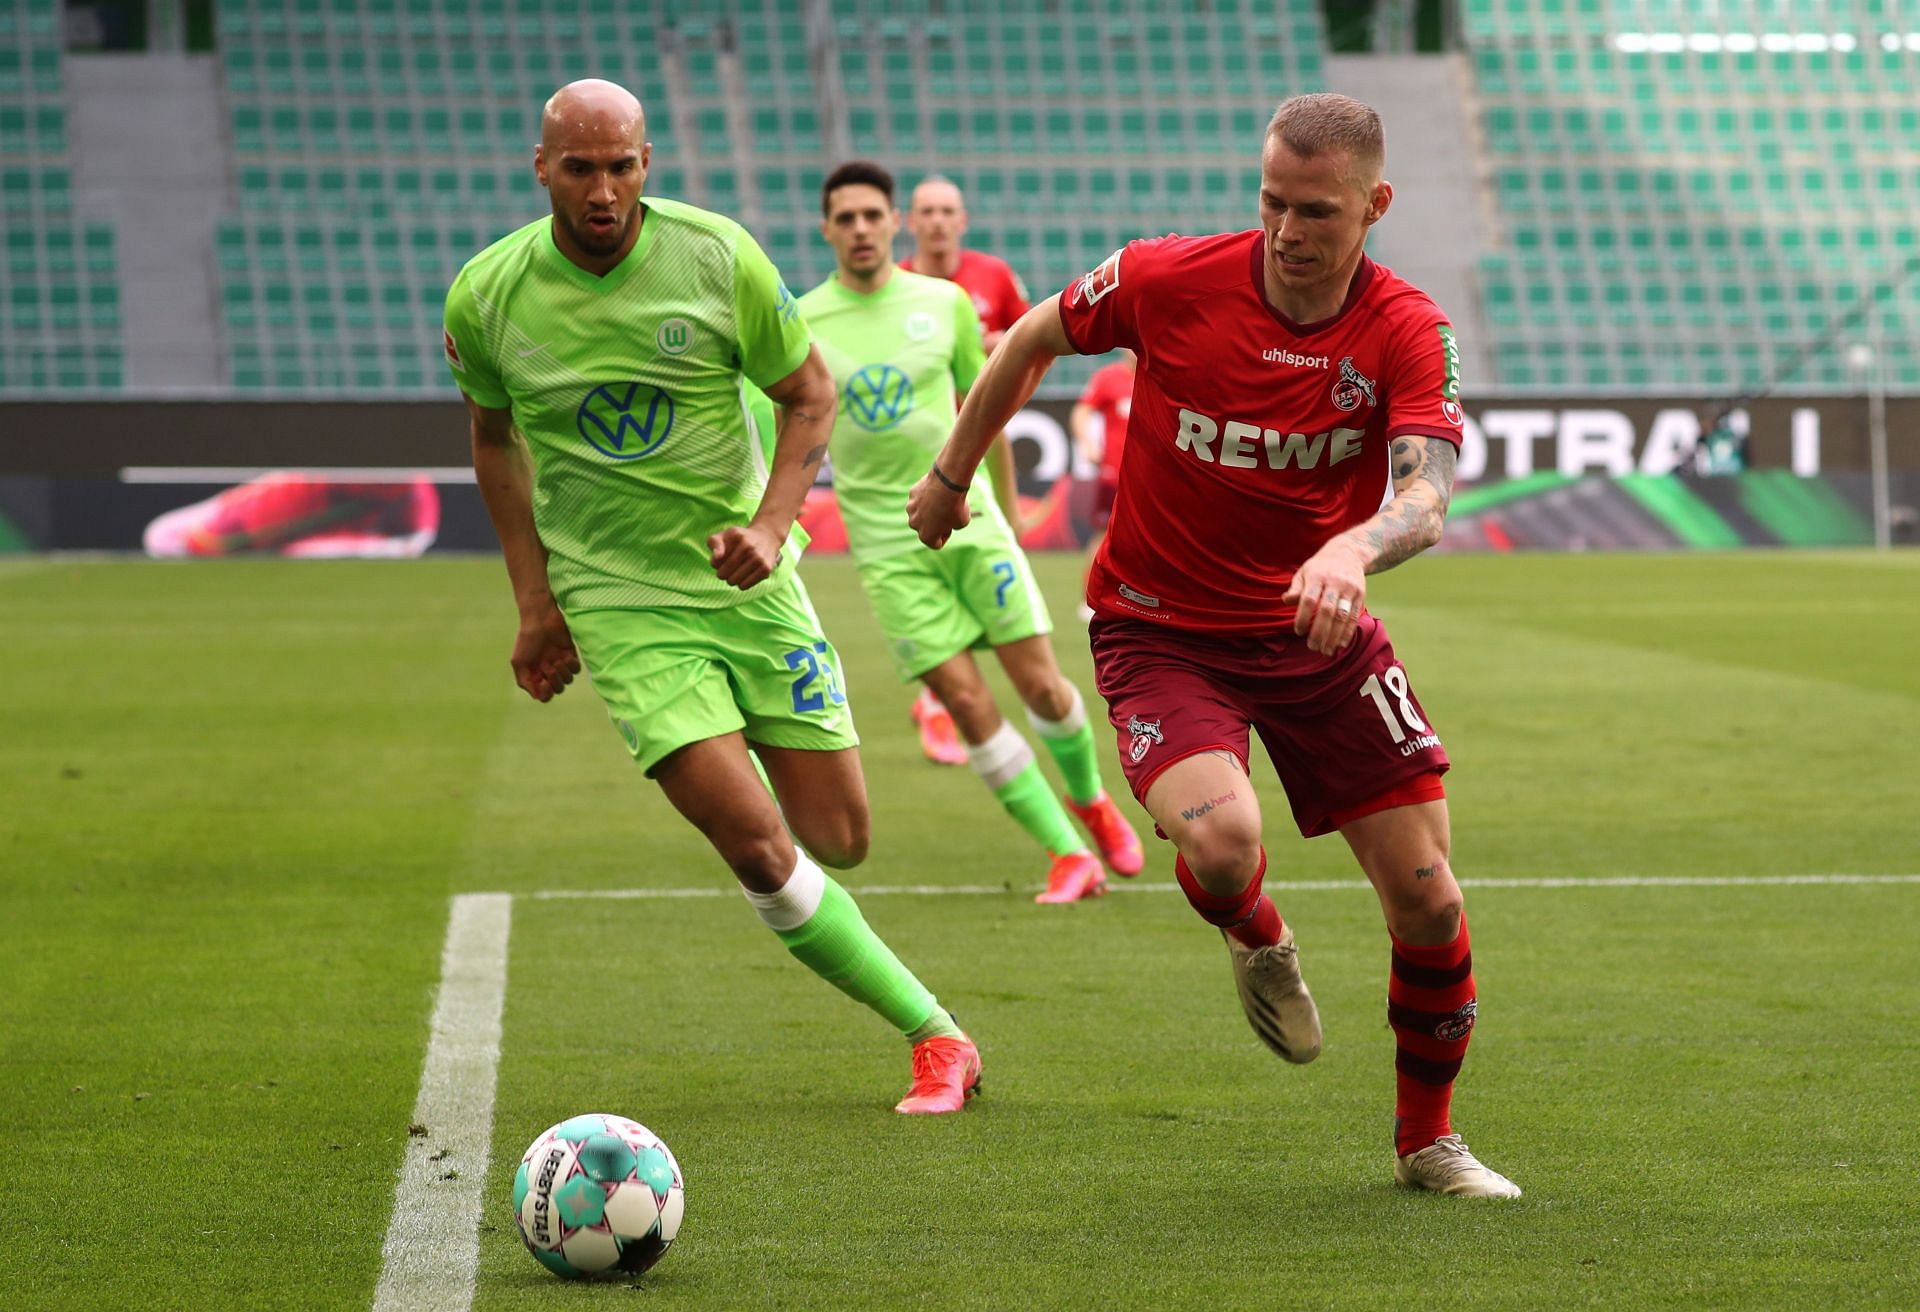 Wolfsburg host Koln on Tuesday